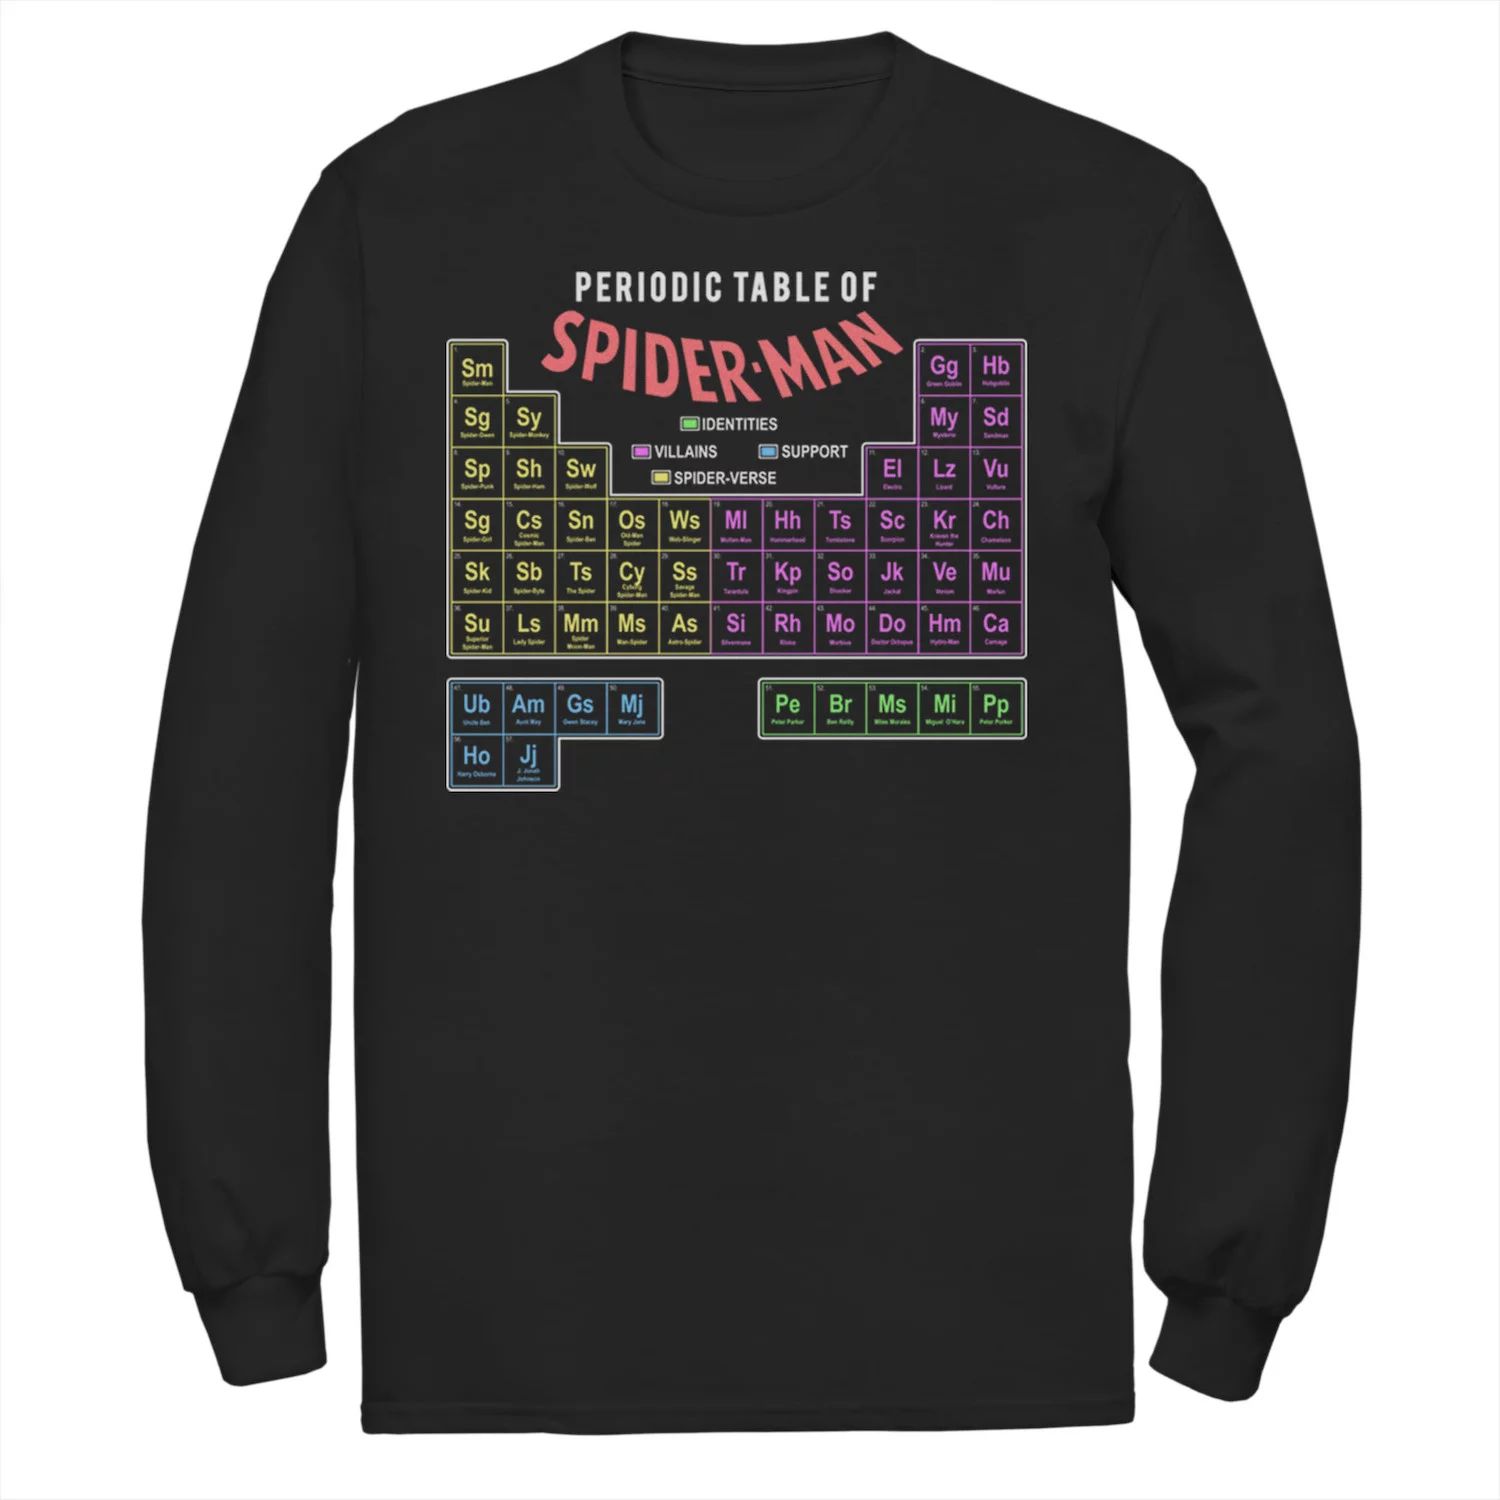 Мужская футболка «Человек-паук» с периодической таблицей Marvel пазл с периодической таблицей rex